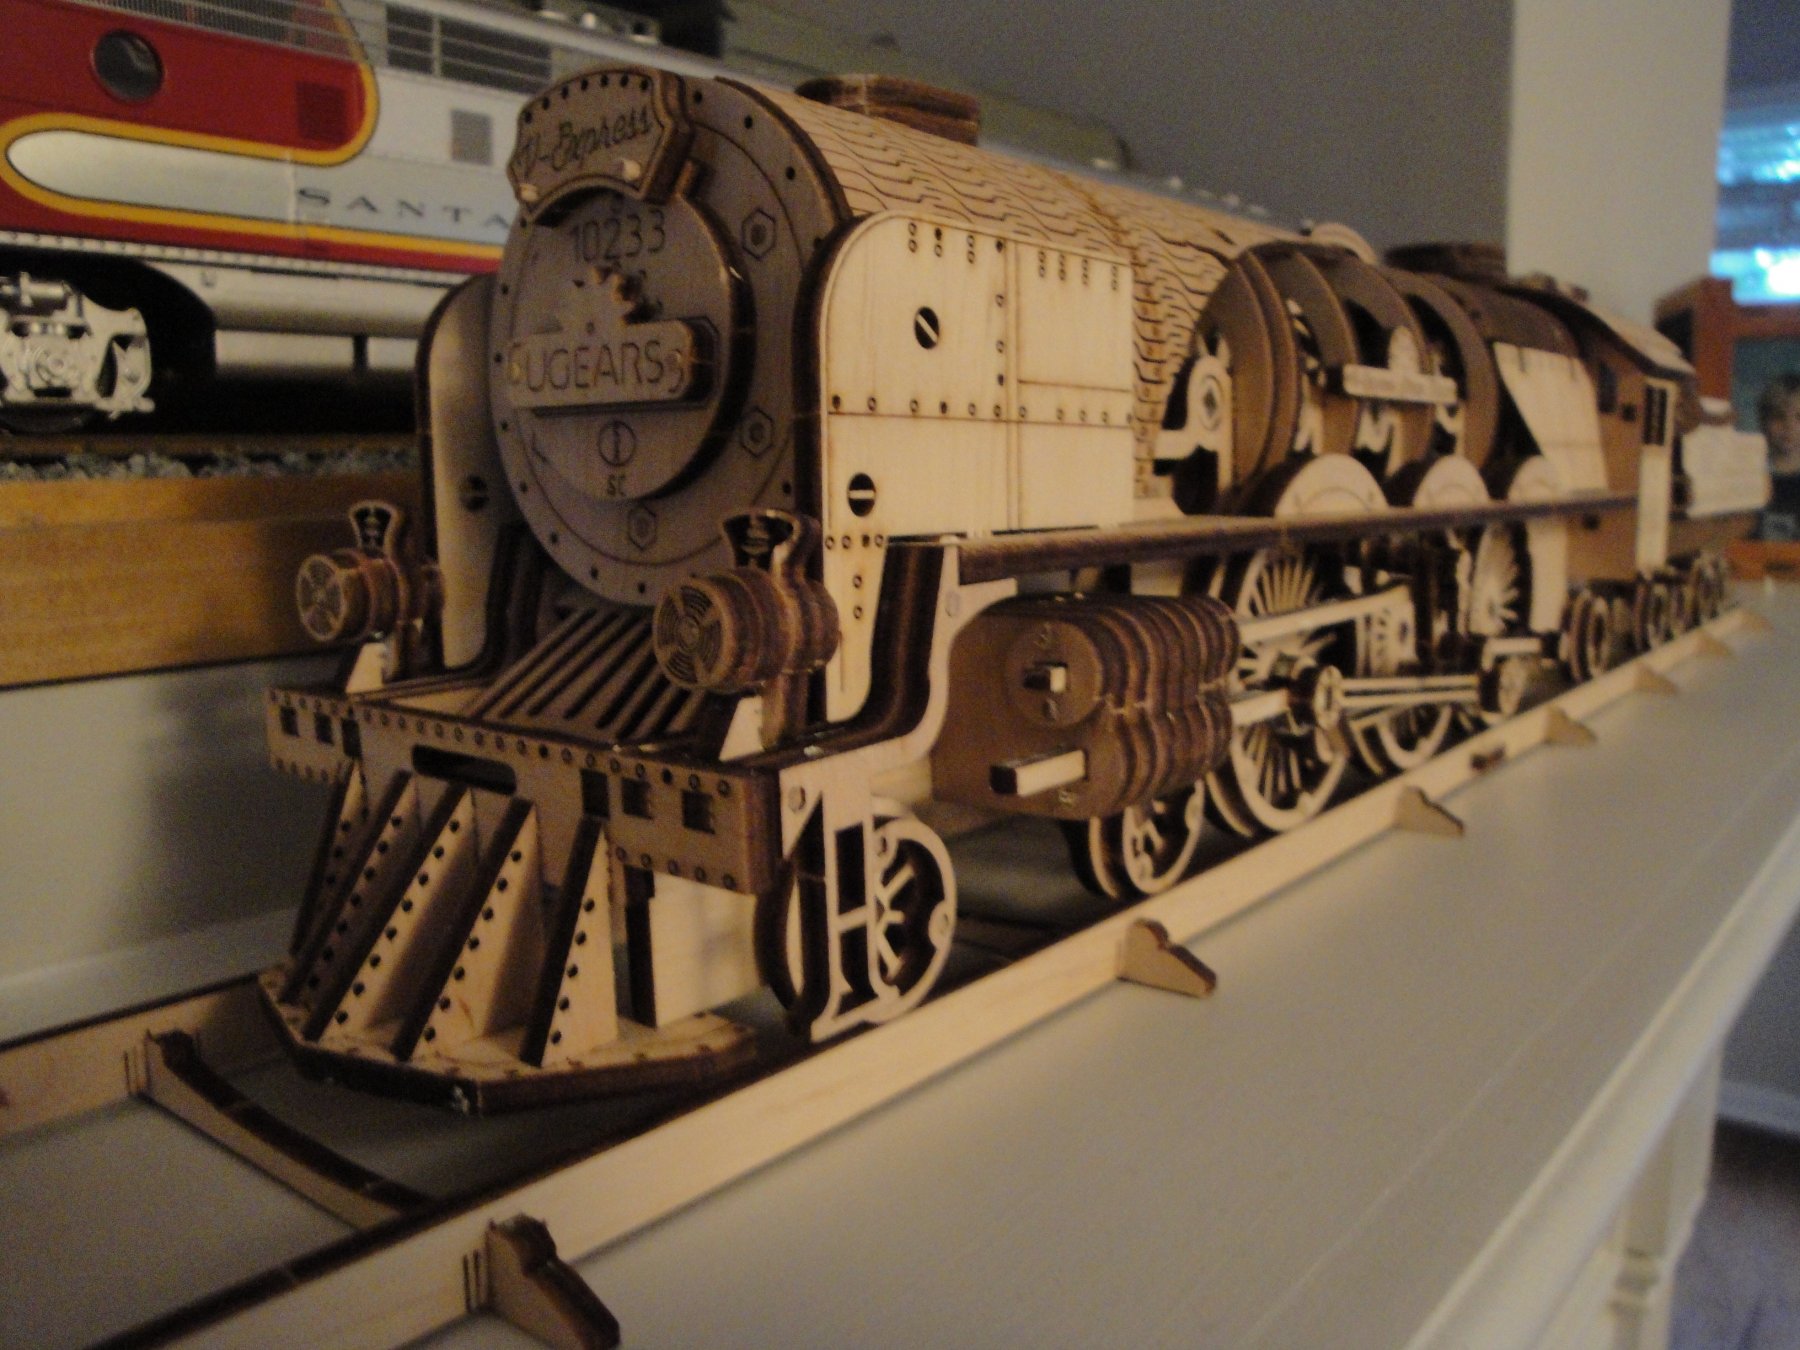 流行り Ugears ユーギアーズ V-Express Steam Train with Tender V-Express蒸気機関車 鉄道模型  ENTEIDRICOCAMPANO